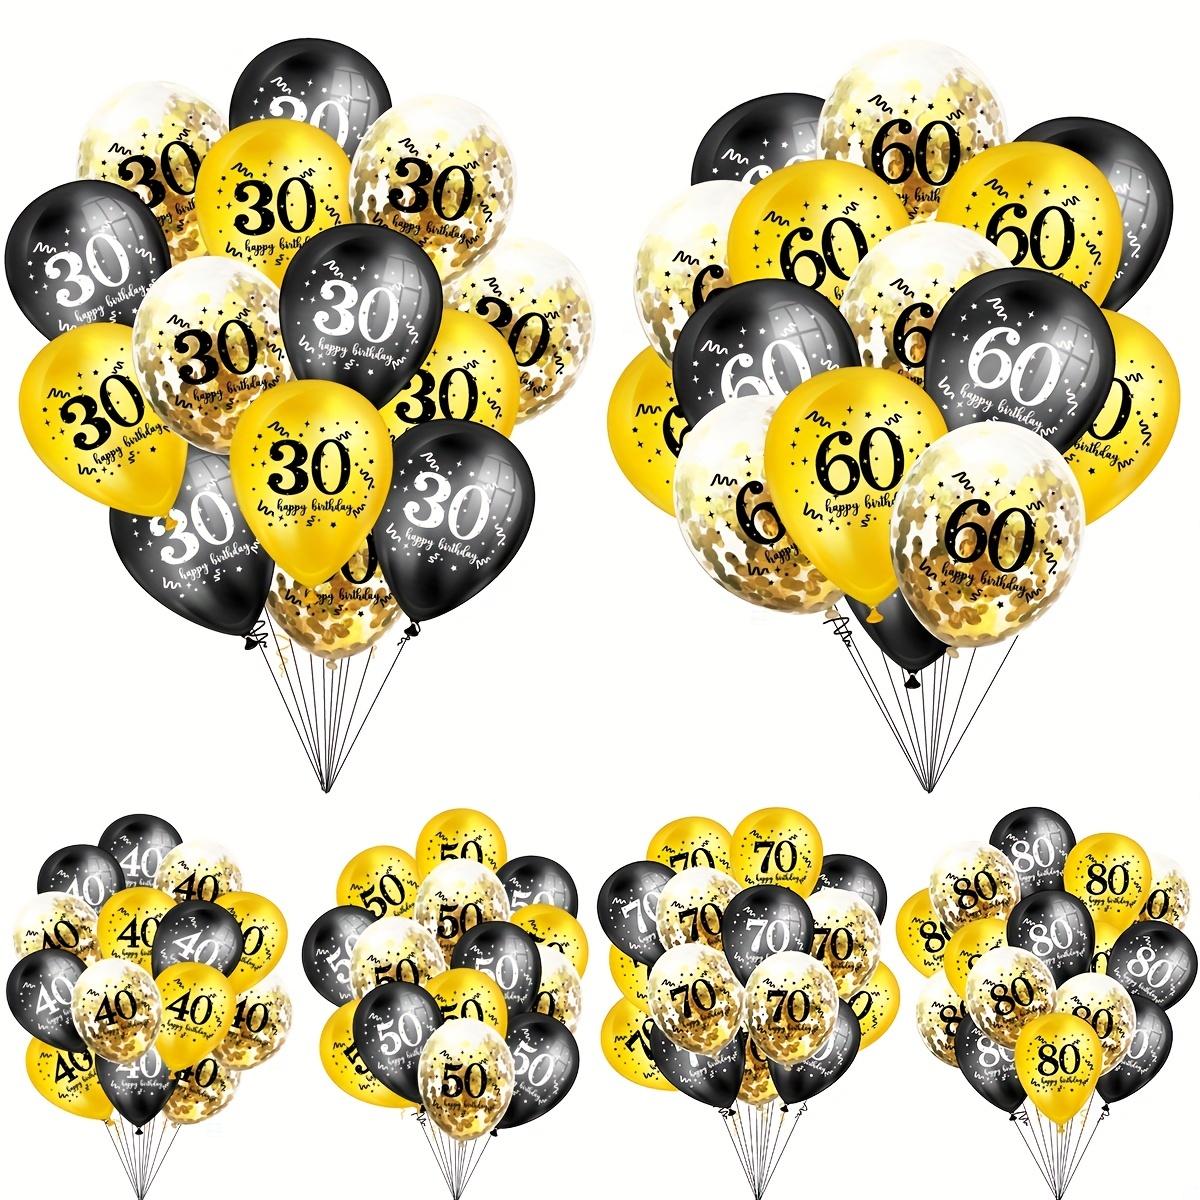 Globos decorativos de 50 cumpleaños, 15 unidades, color negro y plateado,  para fiesta de cumpleaños 50, globos de confeti de látex para hombres y